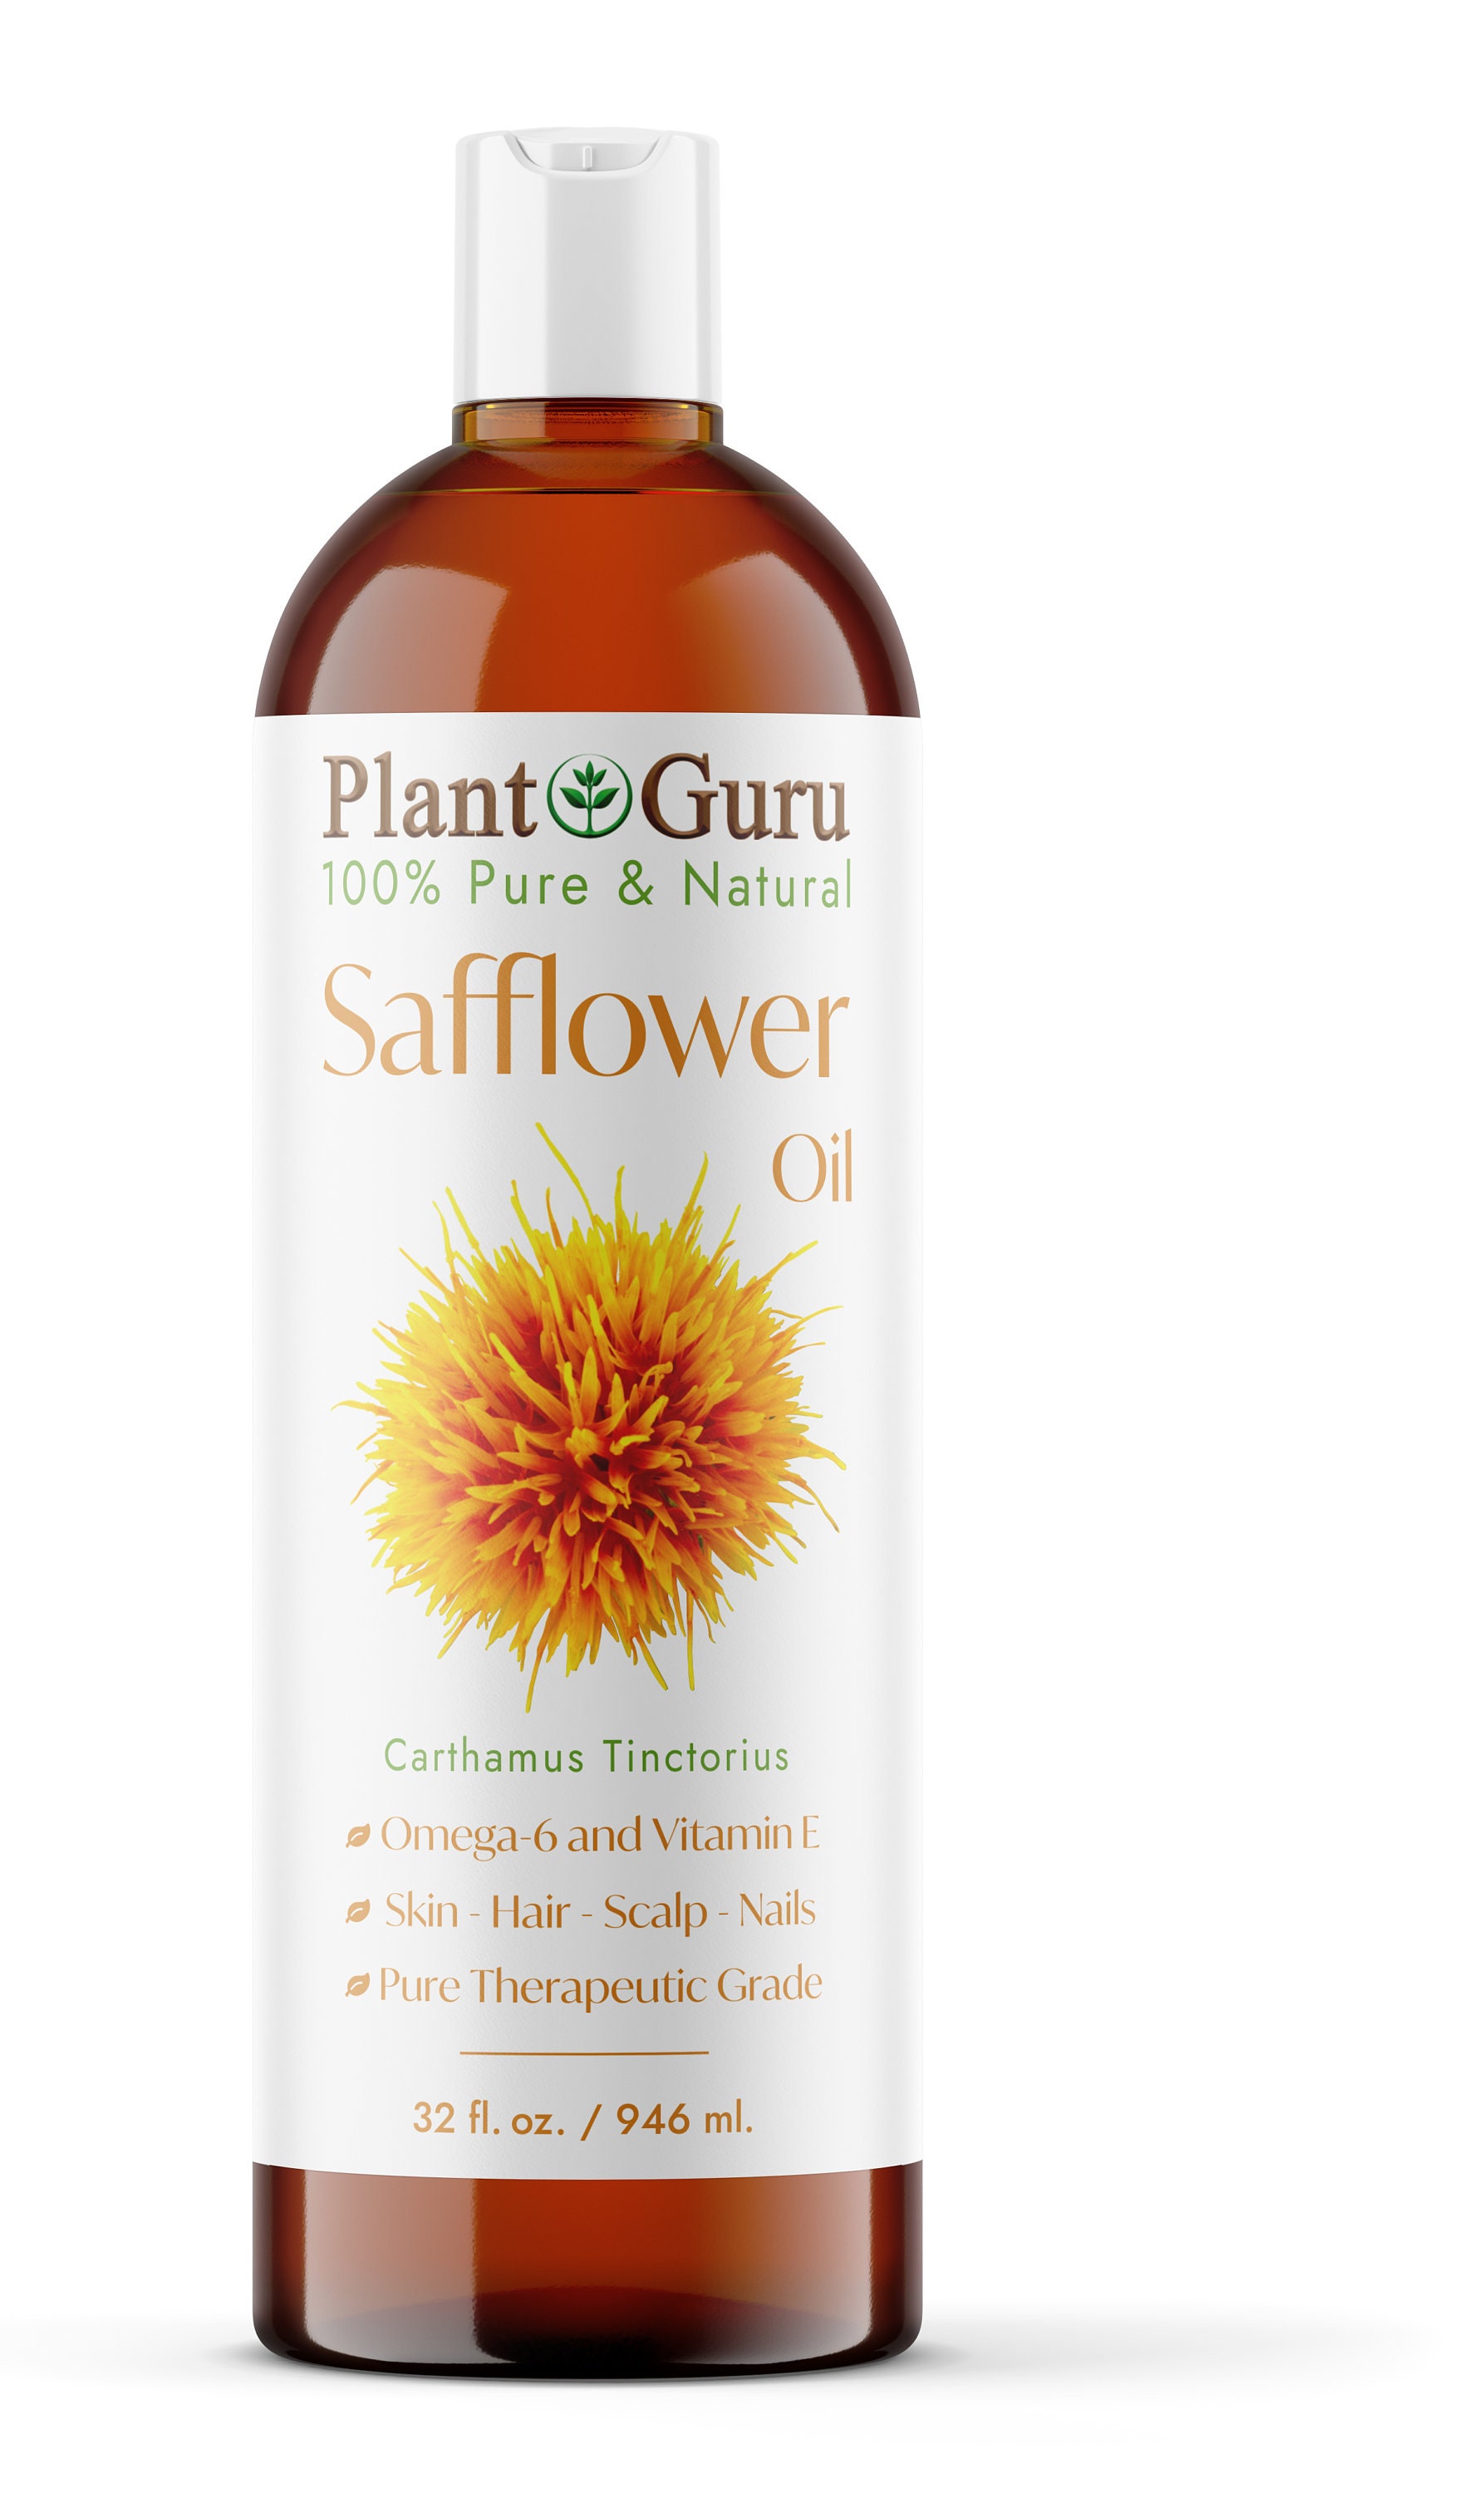 Safflower Oil, High Linoleic - Sample – Willo Naturals